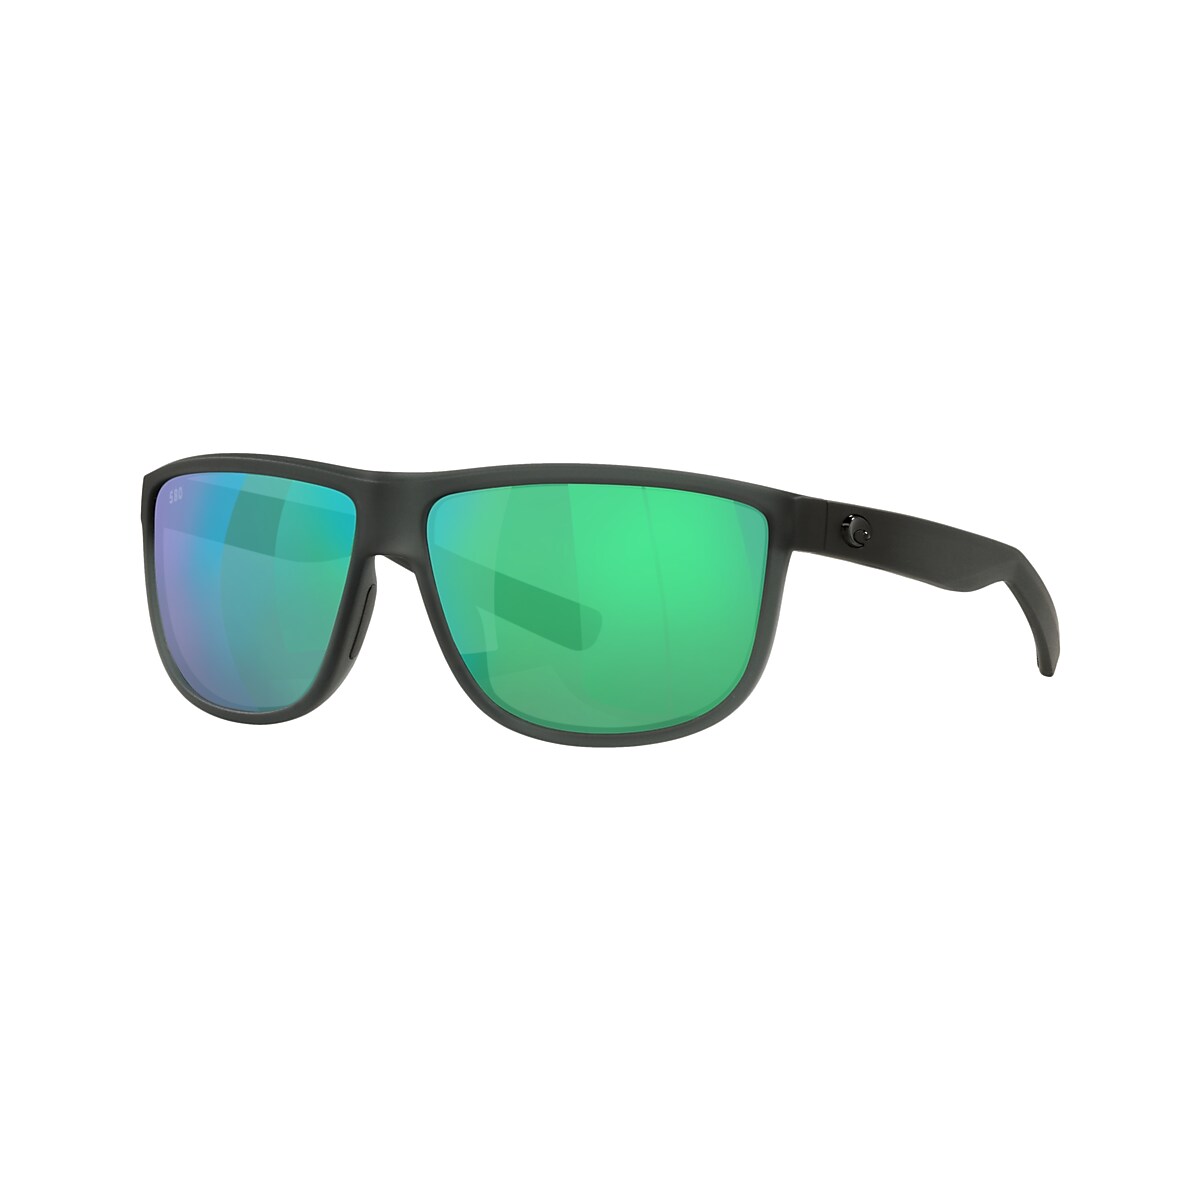 Rincondo Polarized Sunglasses in Green Mirror | Costa Del Mar®